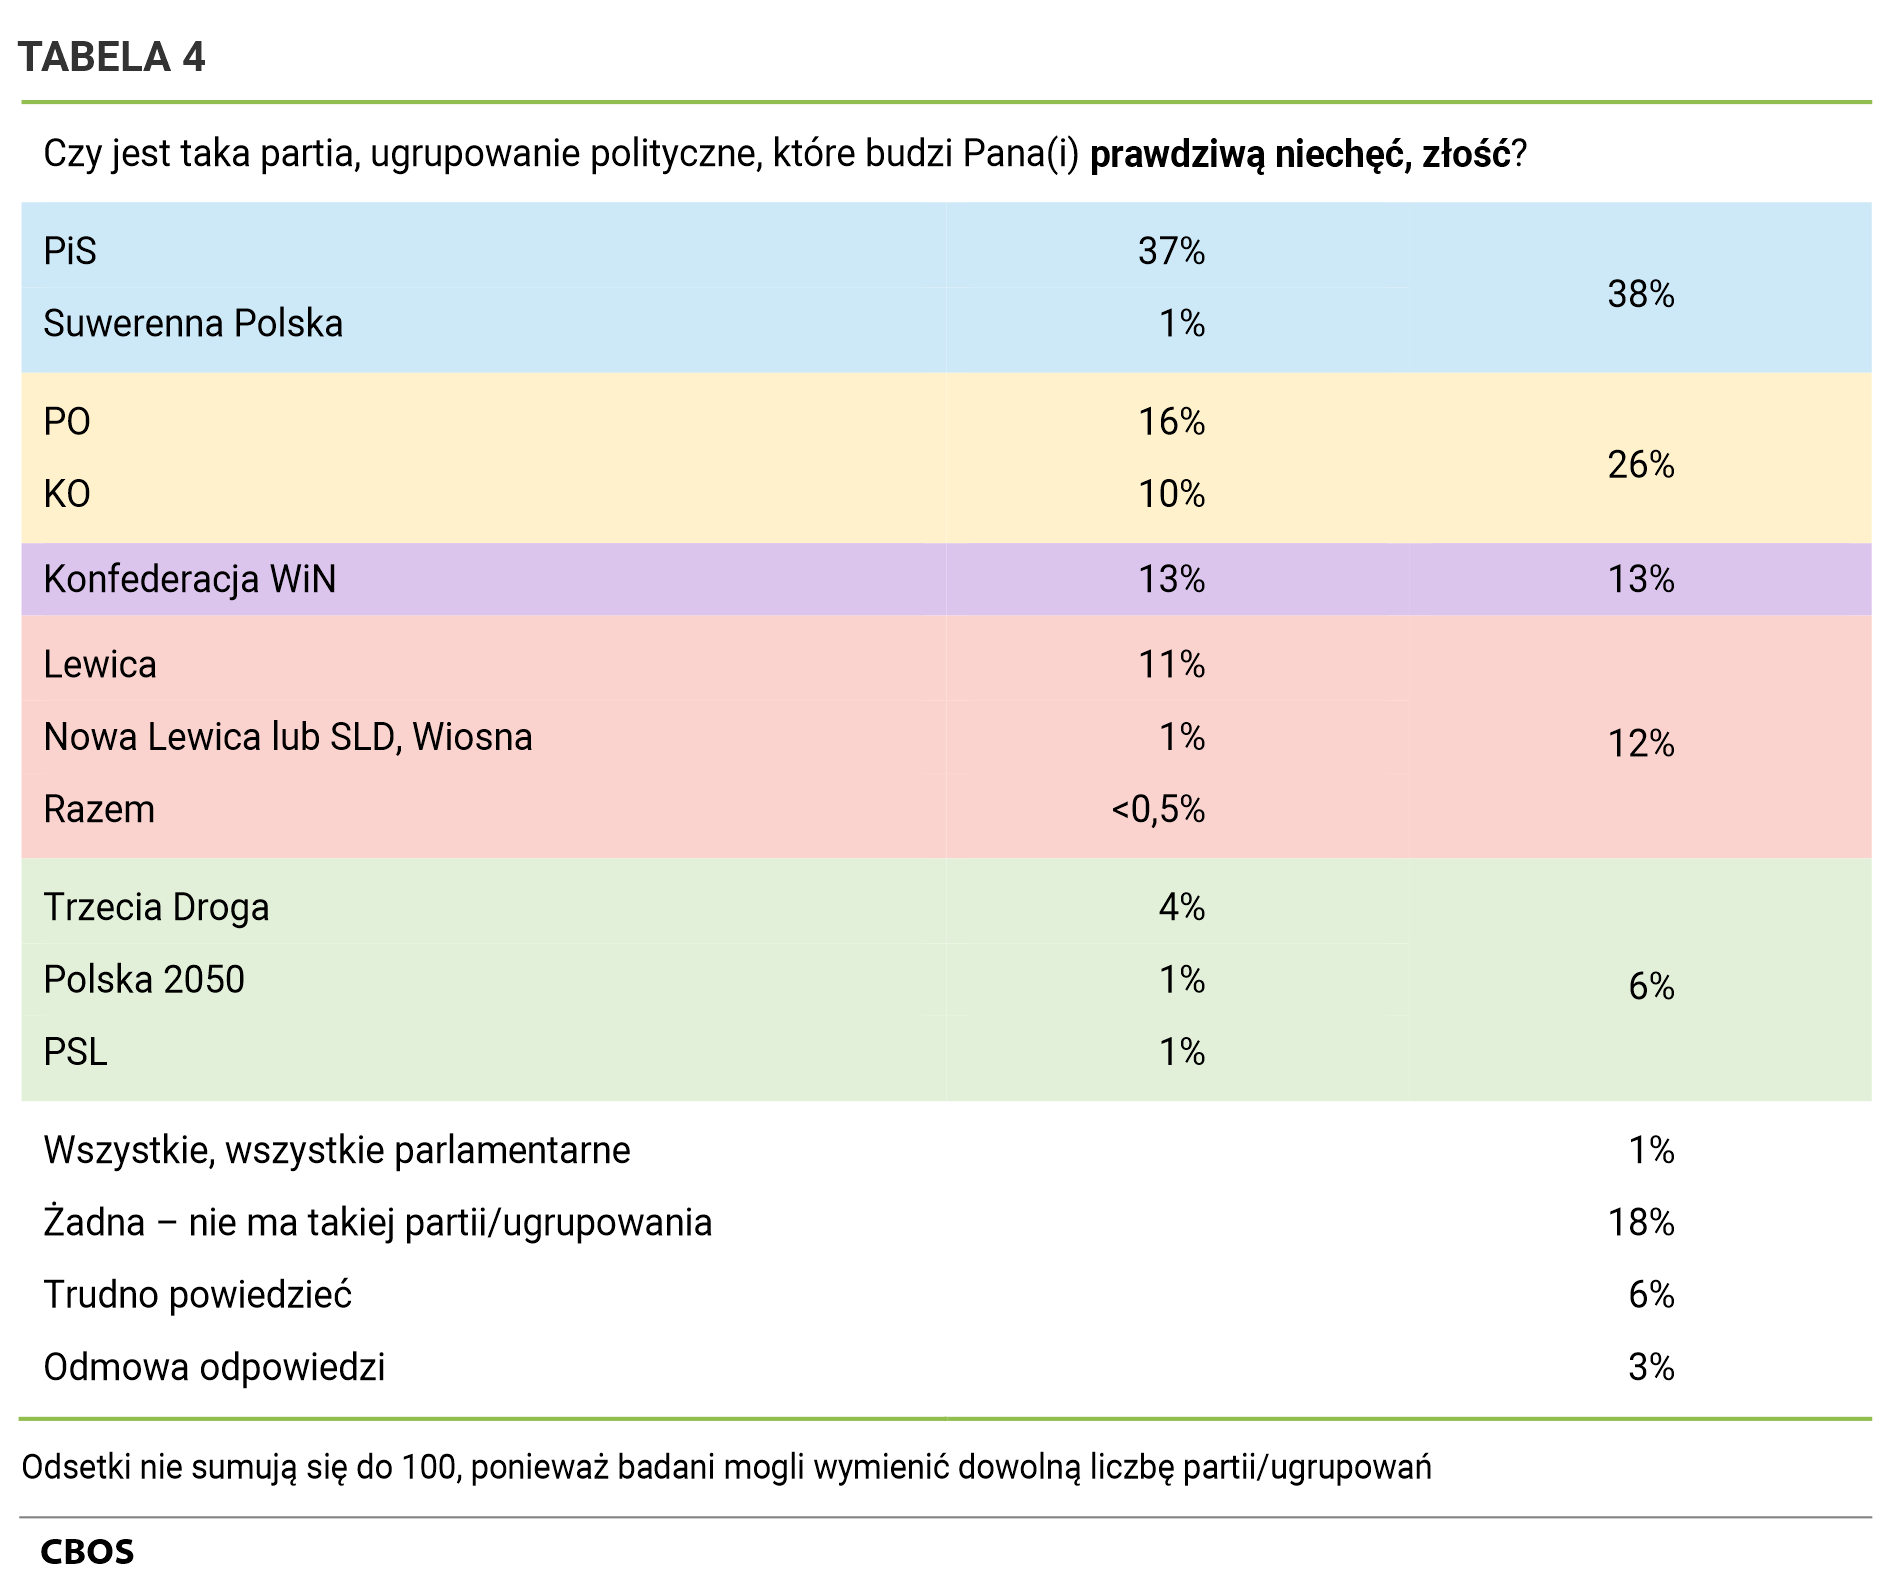 Tabela 4. Czy jest taka partia, ugrupowanie polityczne, które budzi Pana (Pani) prawdziwą niechęć, złość? PiS  - 37%, Suwerenna Polska - 1%, łącznie powyższe - 38%, PO - 16%, KO - 10%, łącznie powyższe - 26%, Konfederacja WiN - 13%, Lewica - 11%, Nowa Lewica lub SLD, Wiosna - 1%, Razem - <0,5%, łącznie powyższe - 12%, Trzecia Droga - 4%, Polska 2050 - 1%, PSL - 1%, łącznie powyższe - 6%, Wszystkie, wszystkie parlamentarne - 1%, Żadna – nie ma takiej partii/ugrupowania - 18%, Trudno powiedzieć - 6%, Odmowa odpowiedzi - 3%. Odsetki nie sumują się do 100, ponieważ badani mogli wymienić dowolną liczbę partii/ugrupowań